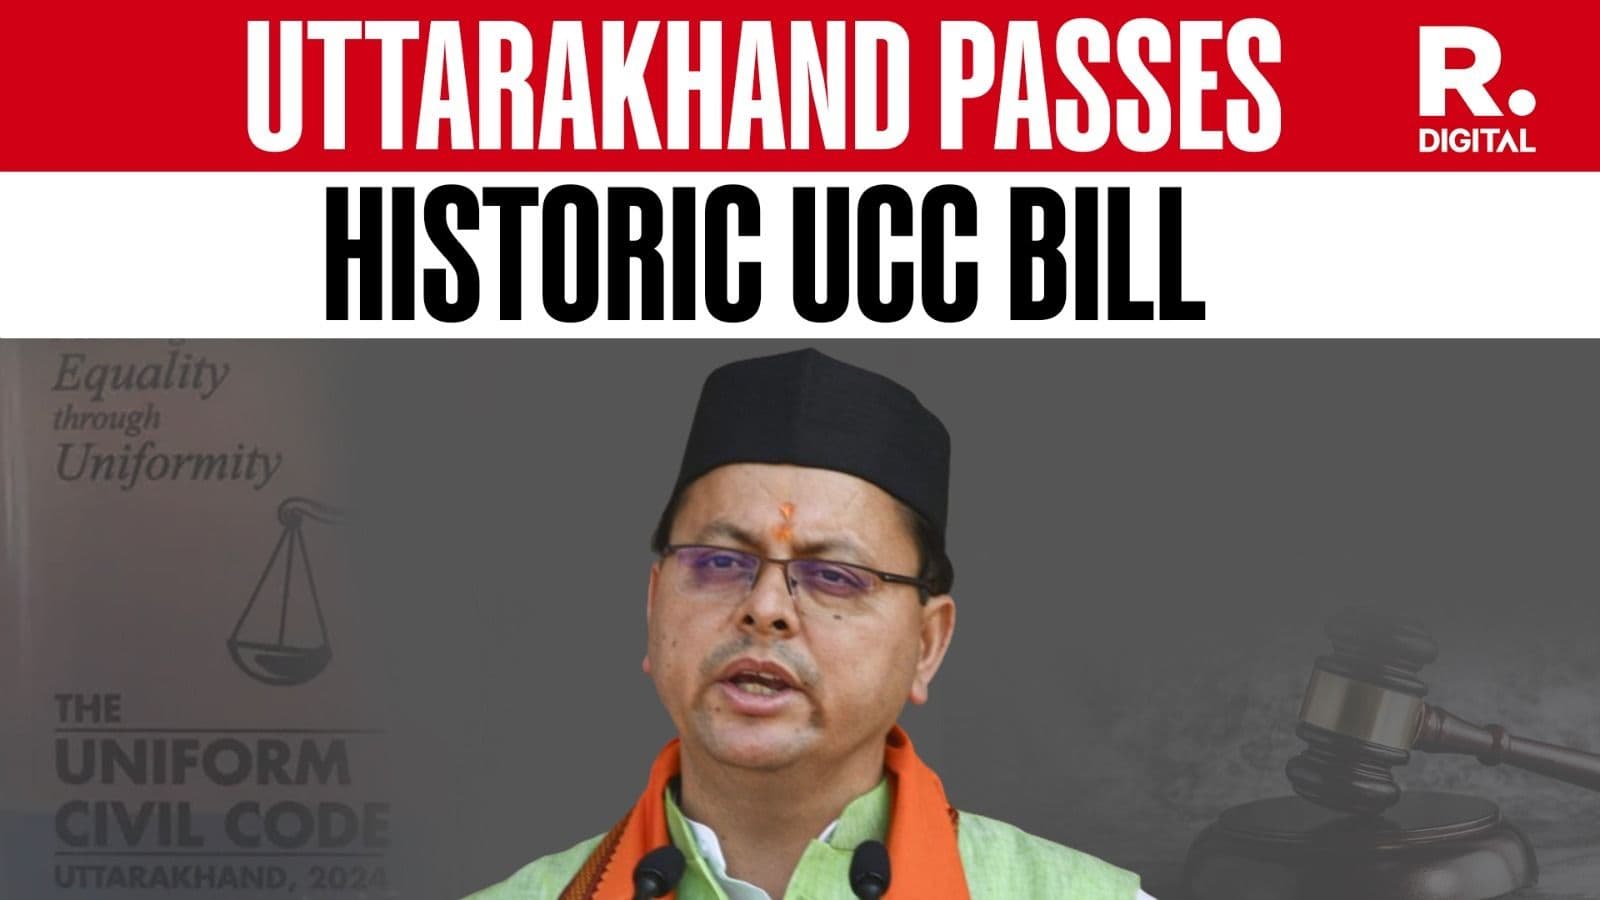 UCC Bill Passed in Uttarakhand Assembly